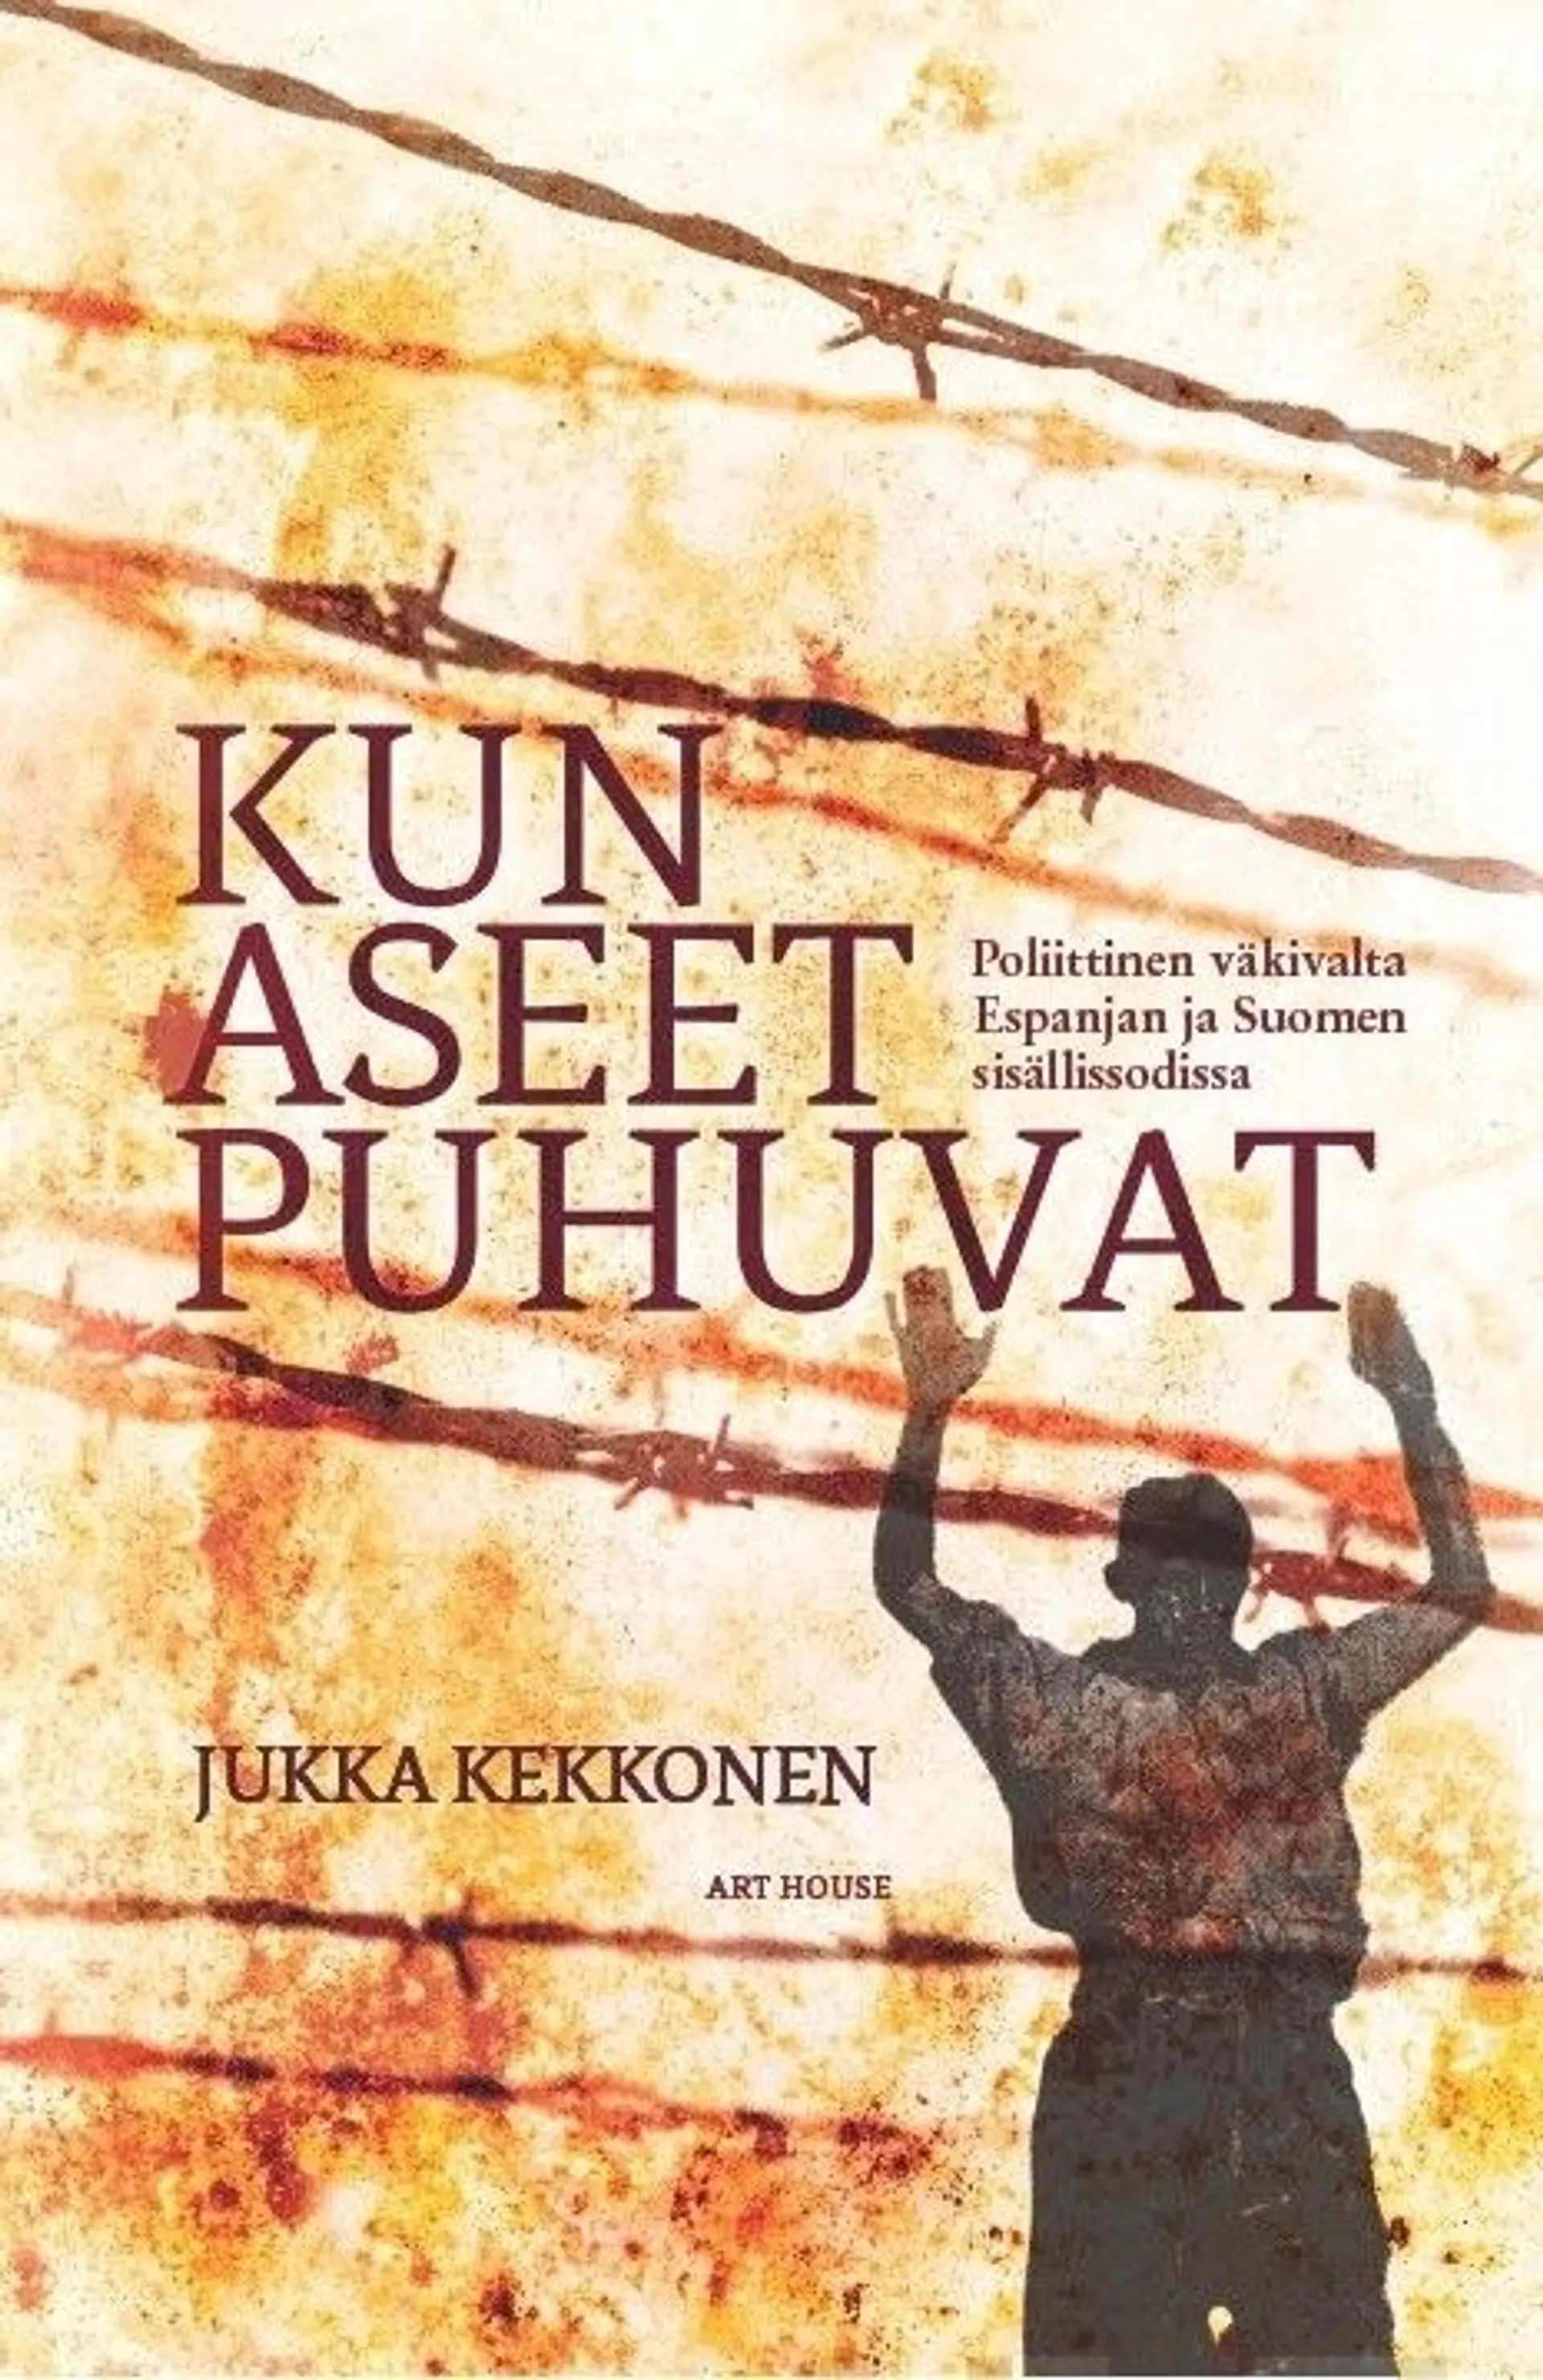 Kekkonen, Kun aseet puhuvat - Poliittinen väkivalta Espanjan ja Suomen sisällissodissa